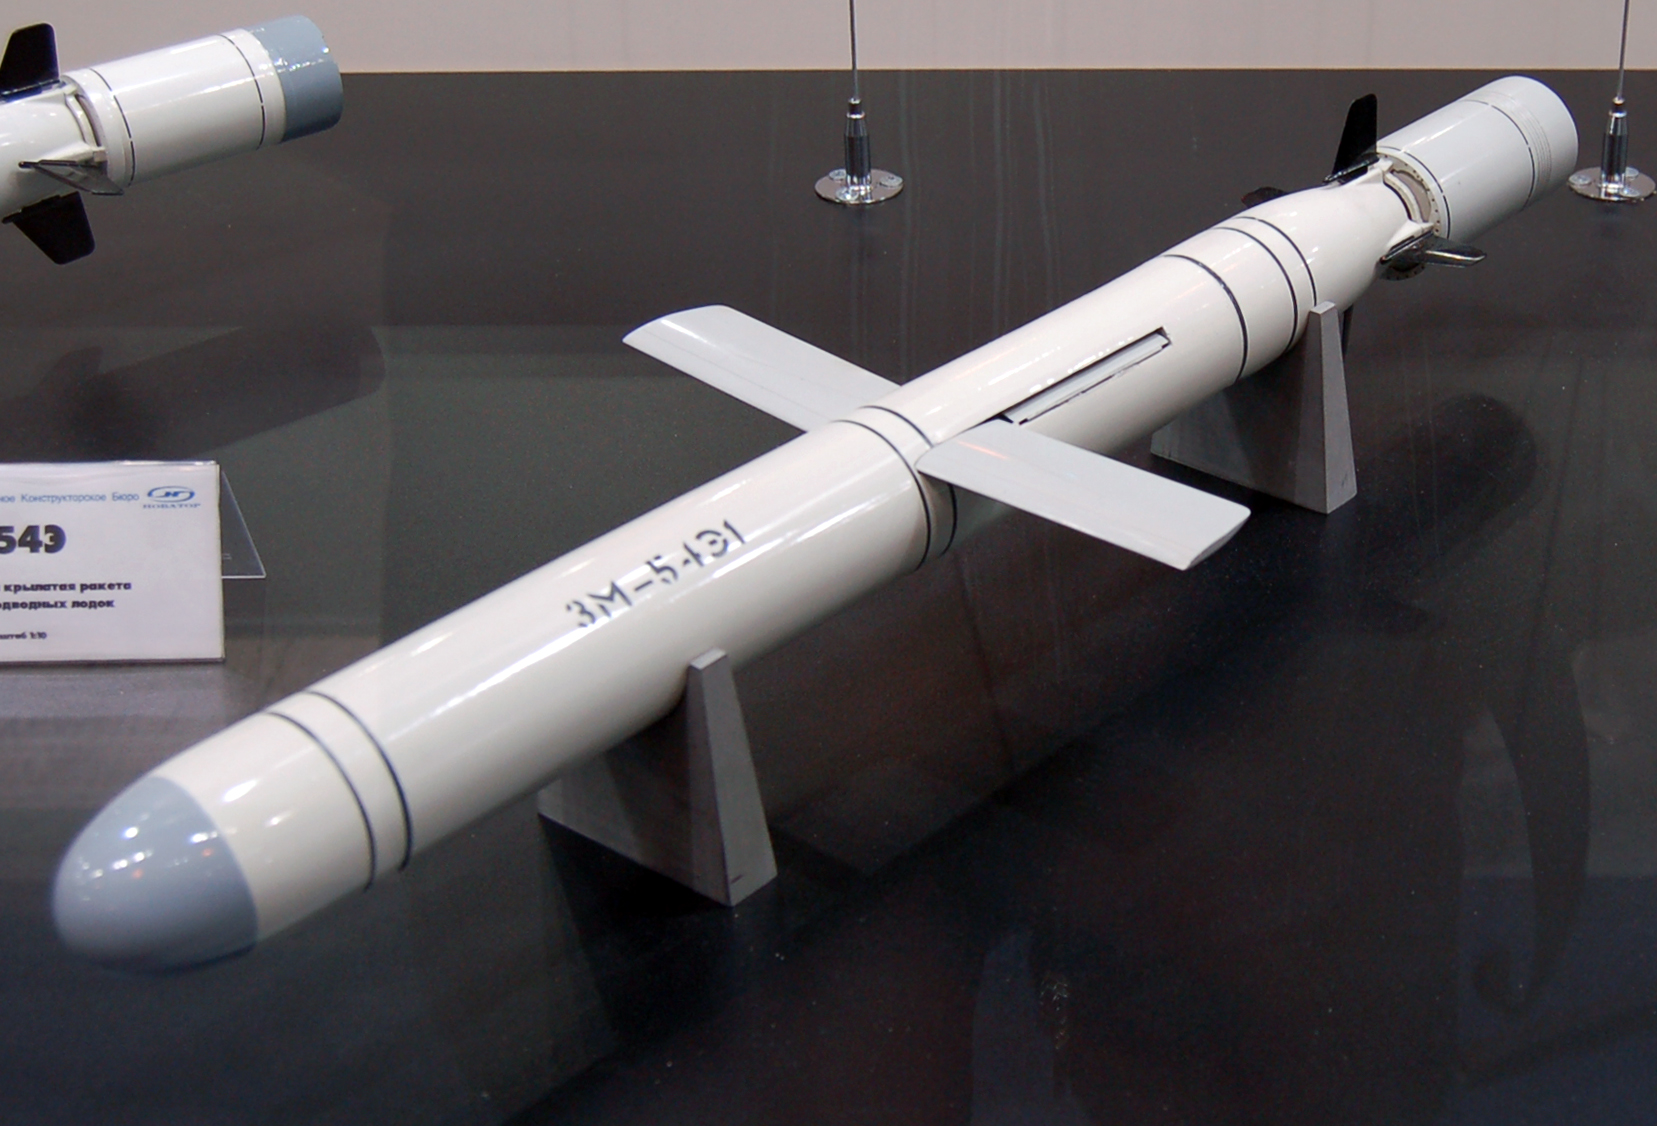 Ракета «Калибр». Фото: commons.wikimedia.org